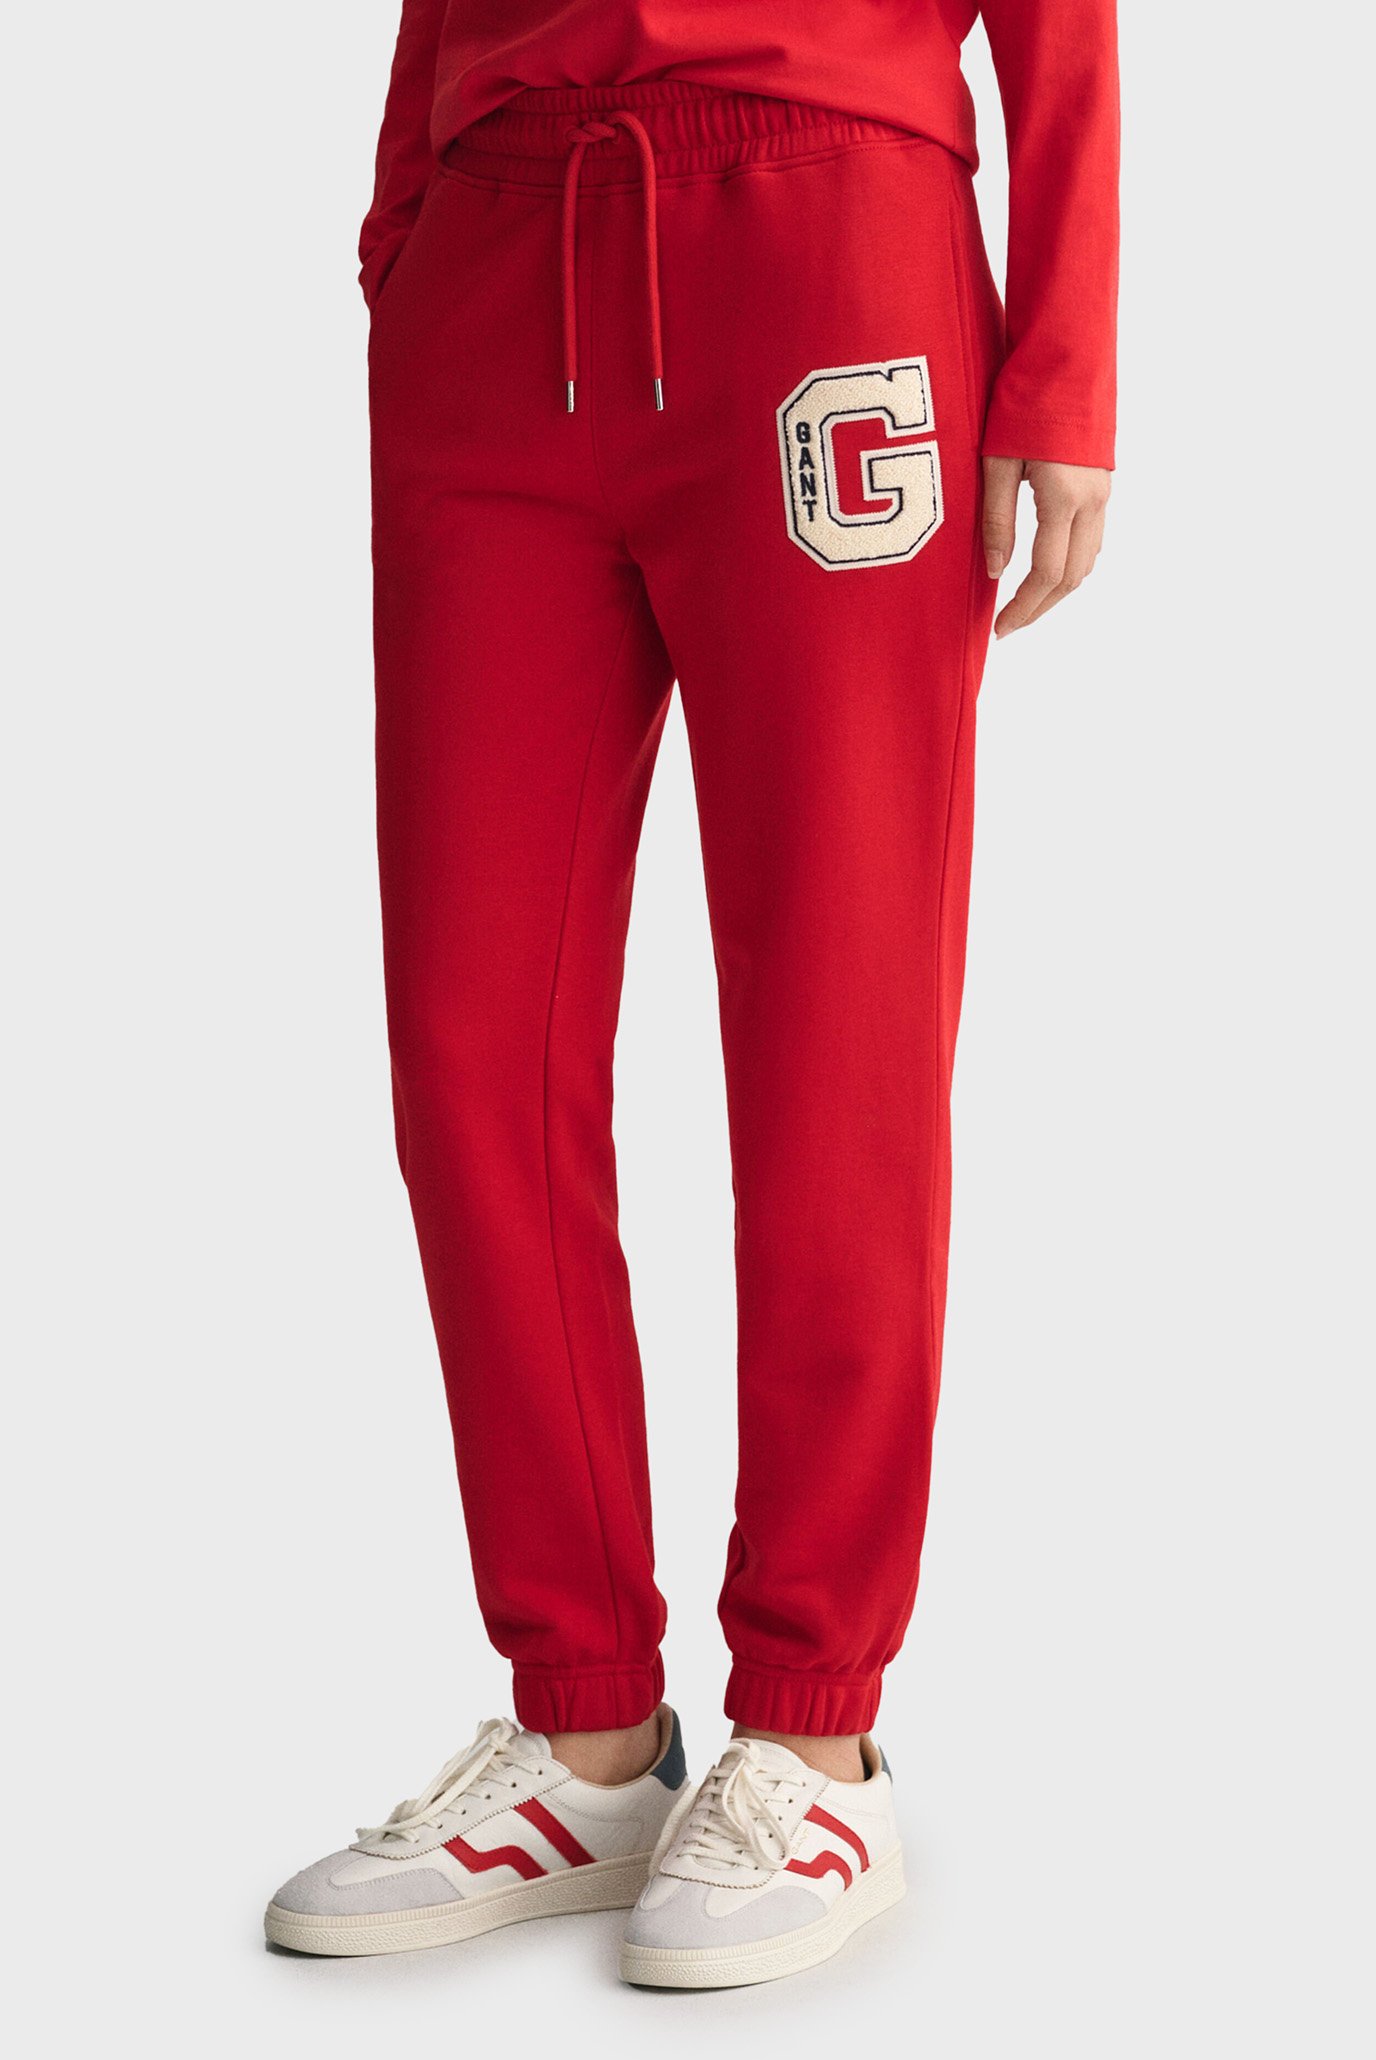 Жіночі червоні спортивні штани REG G 1